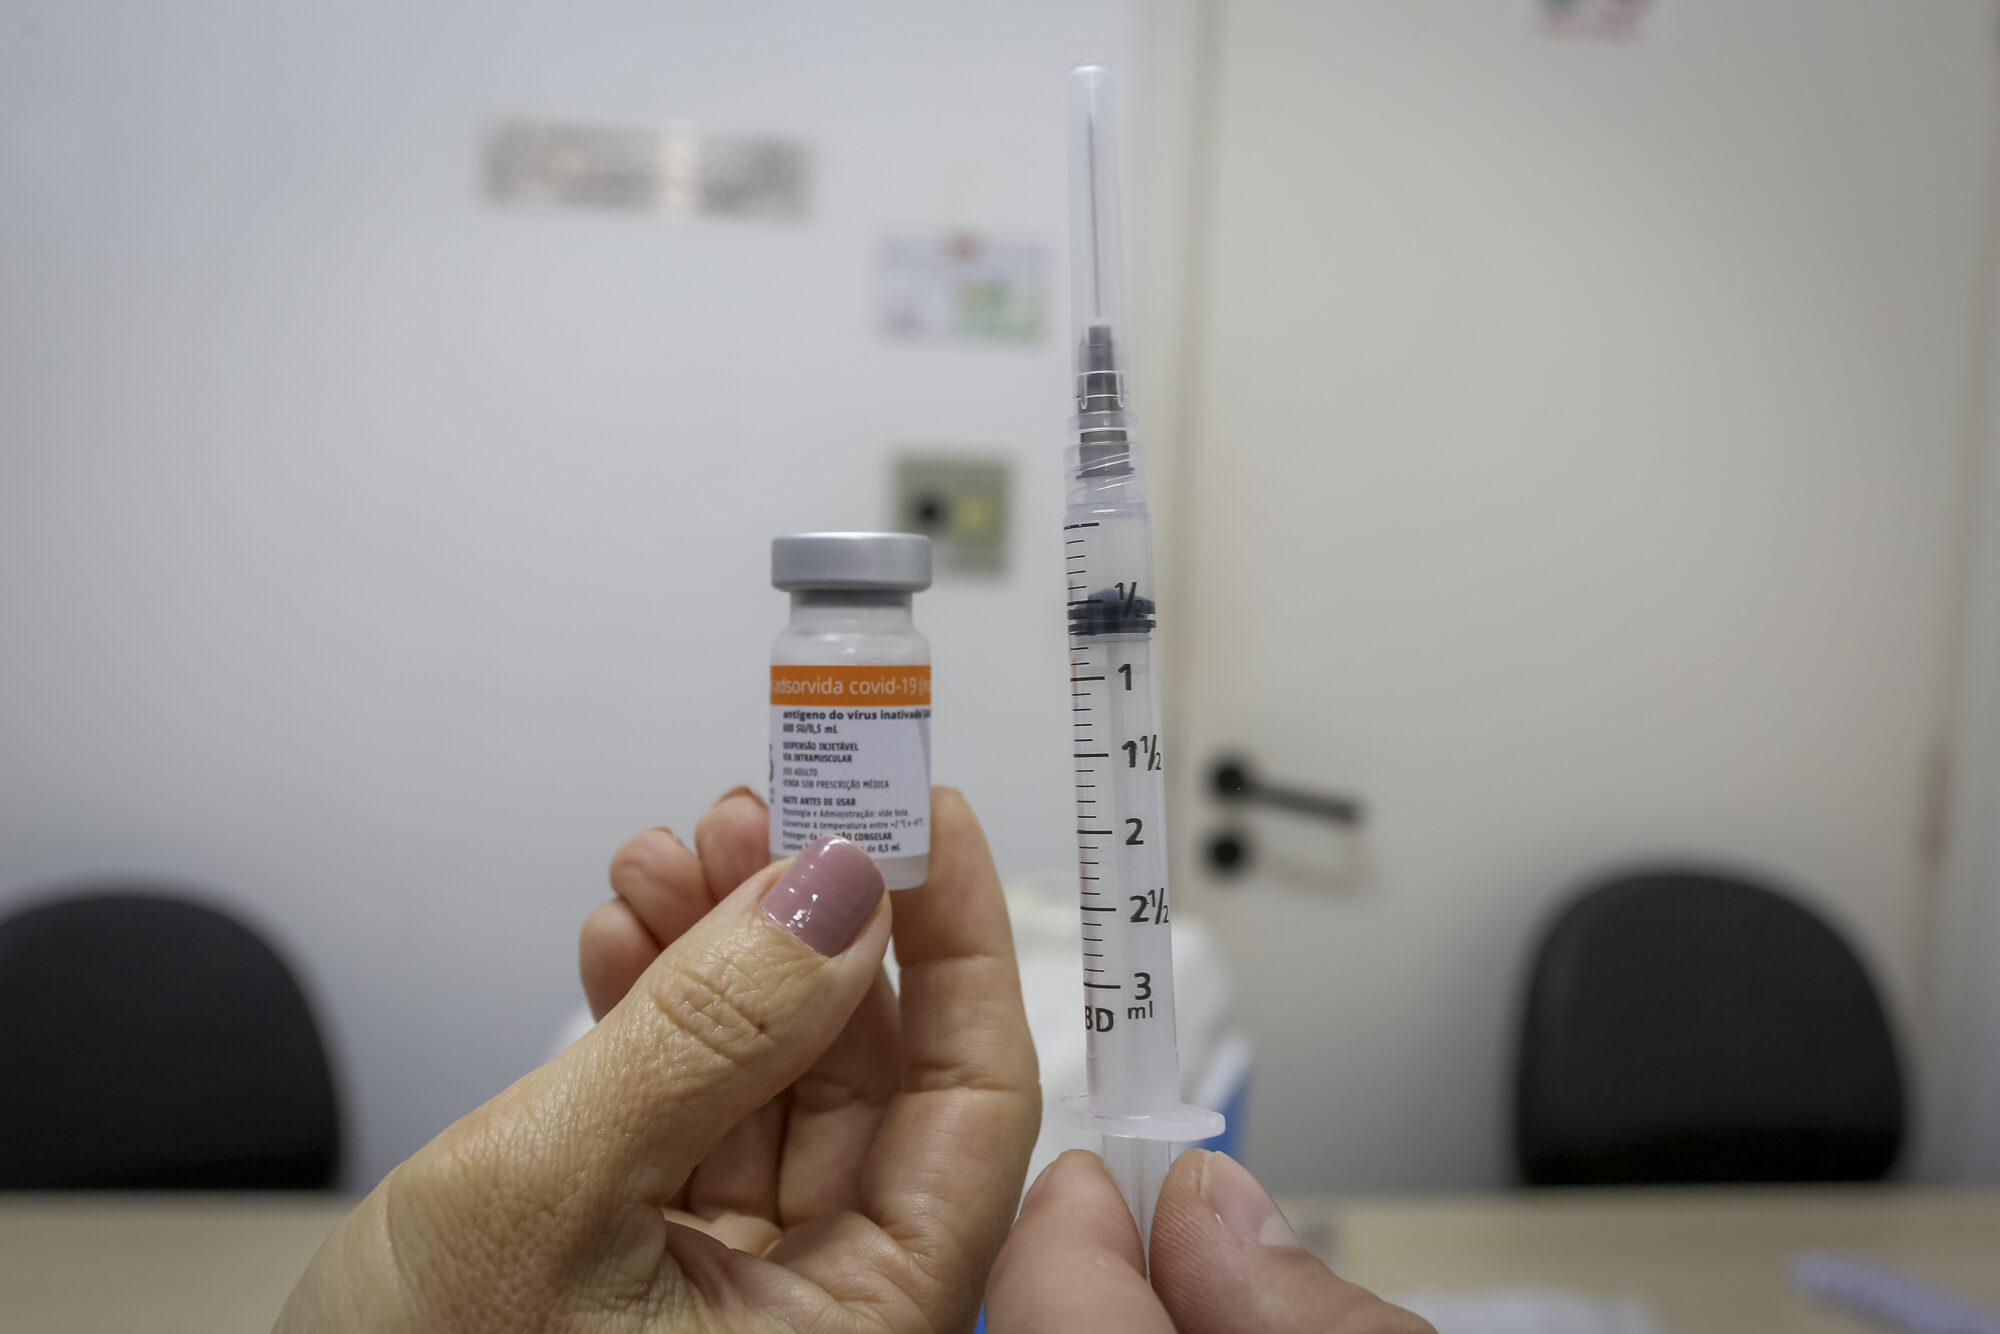 Segunda dose da vacina contra covid-19 para idosos de 85 a 89 anos acontece na próxima semana em Itararé (SP)